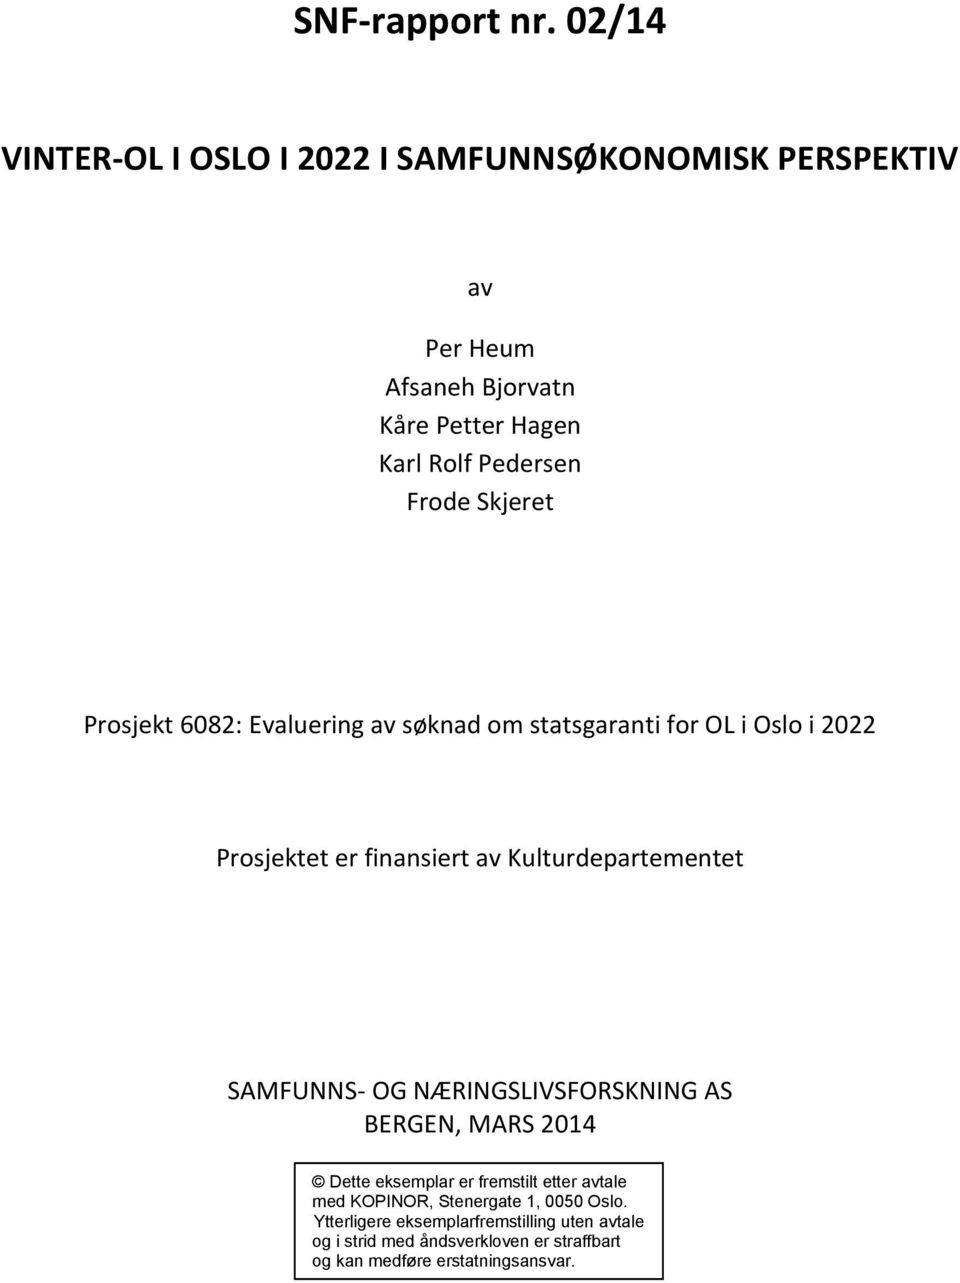 SAMFUNNS- OG NÆRINGSLIVSFORSKNING AS BERGEN, MARS 2014 Dette eksemplar er fremstilt etter avtale med KOPINOR, Stenergate 1, 0050